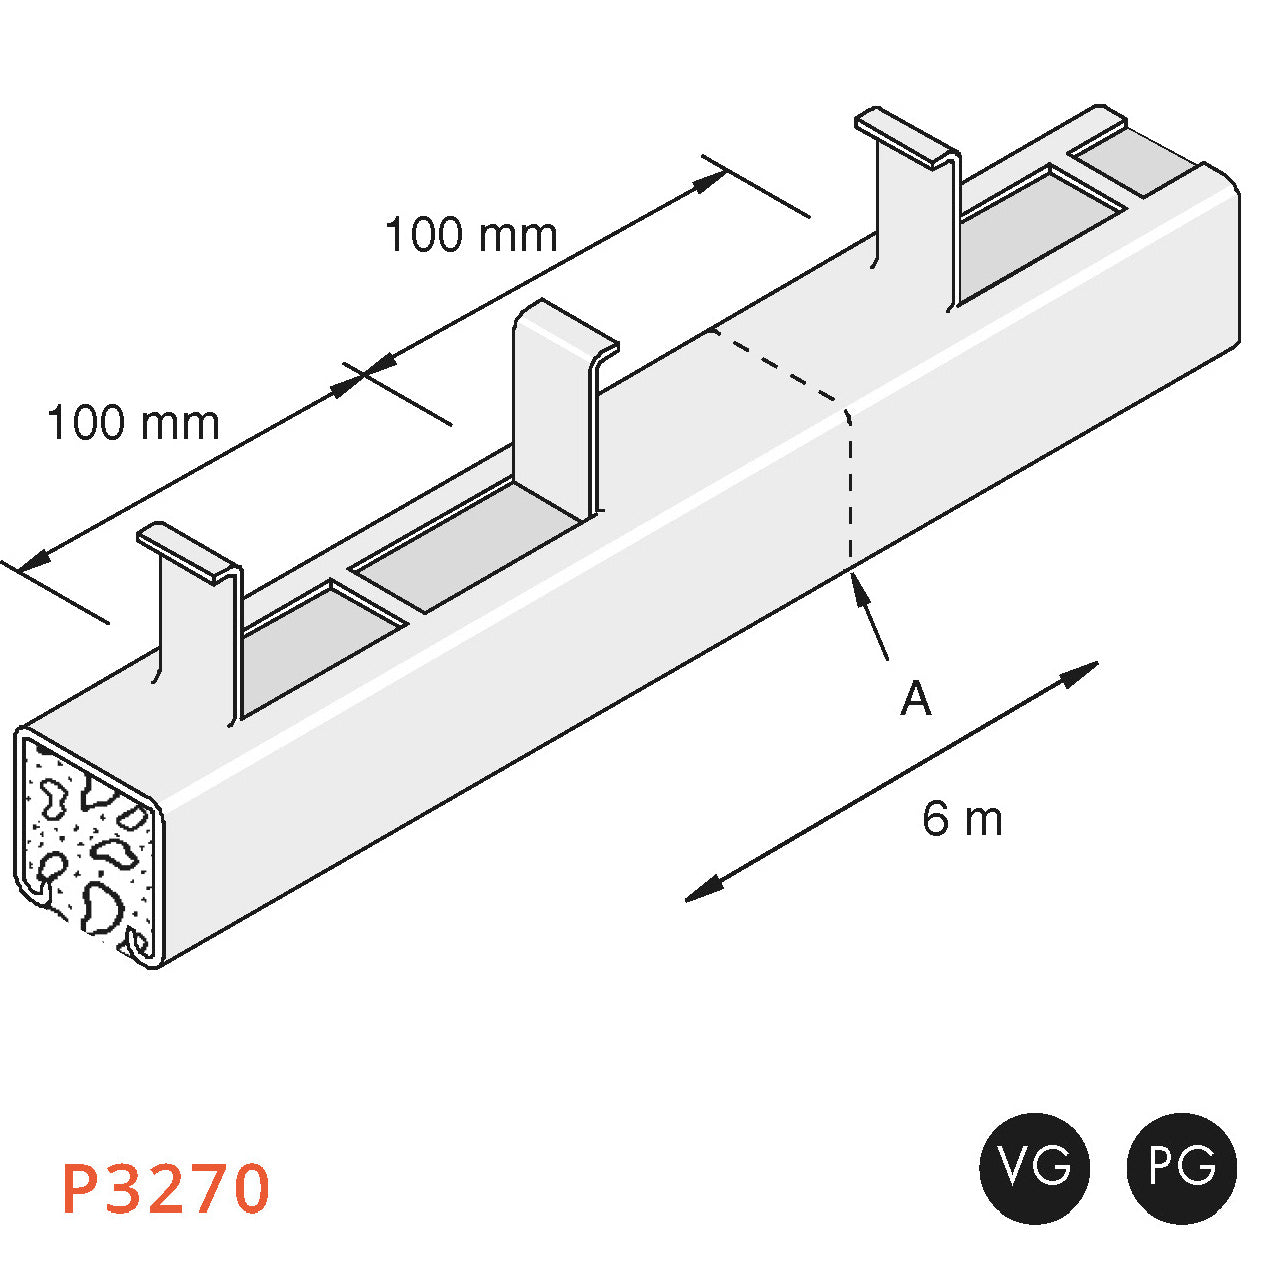 Kraftig 41x41 mm indstøbningsprofil til væg, gulv eller loft